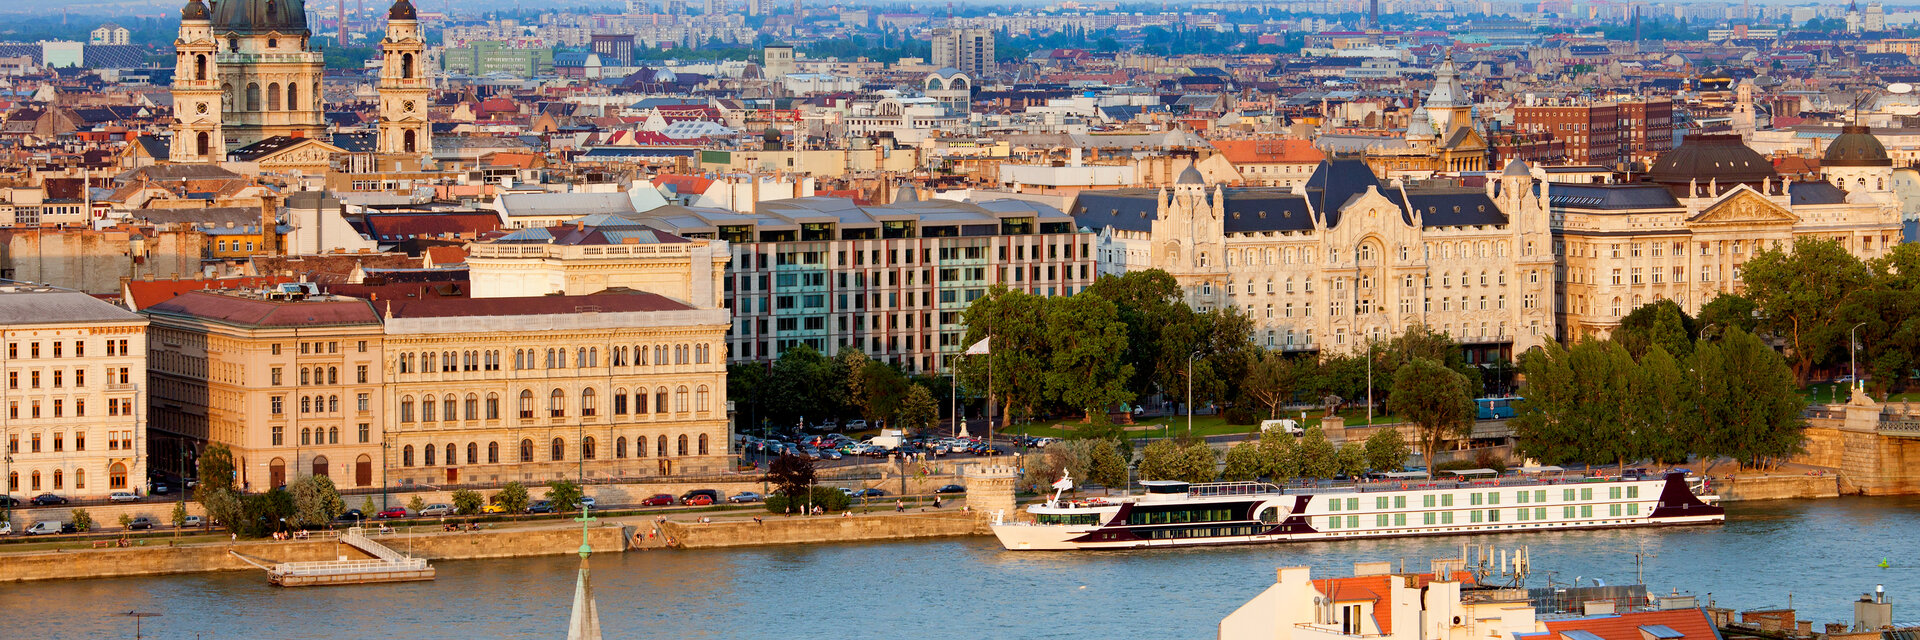 Поиск спа-отелей Будапешта